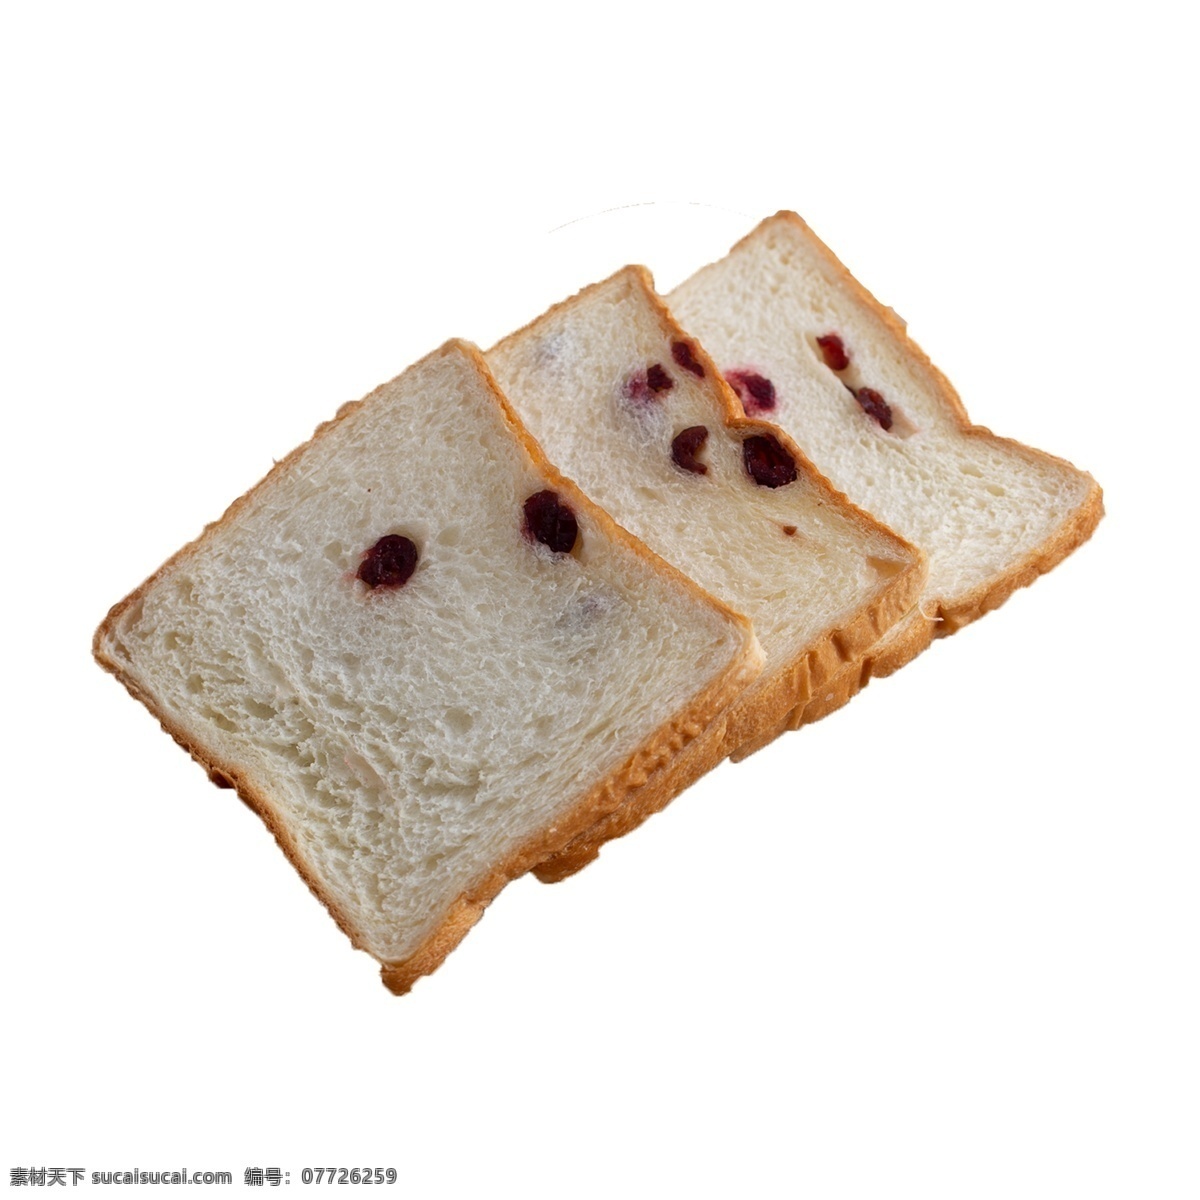 三 片 切片 面包 实拍 免 抠 三片面包 切片面包 早餐 食物 吃食 实物拍摄 免抠 营养 蓬松 早饭 烤箱 烘培